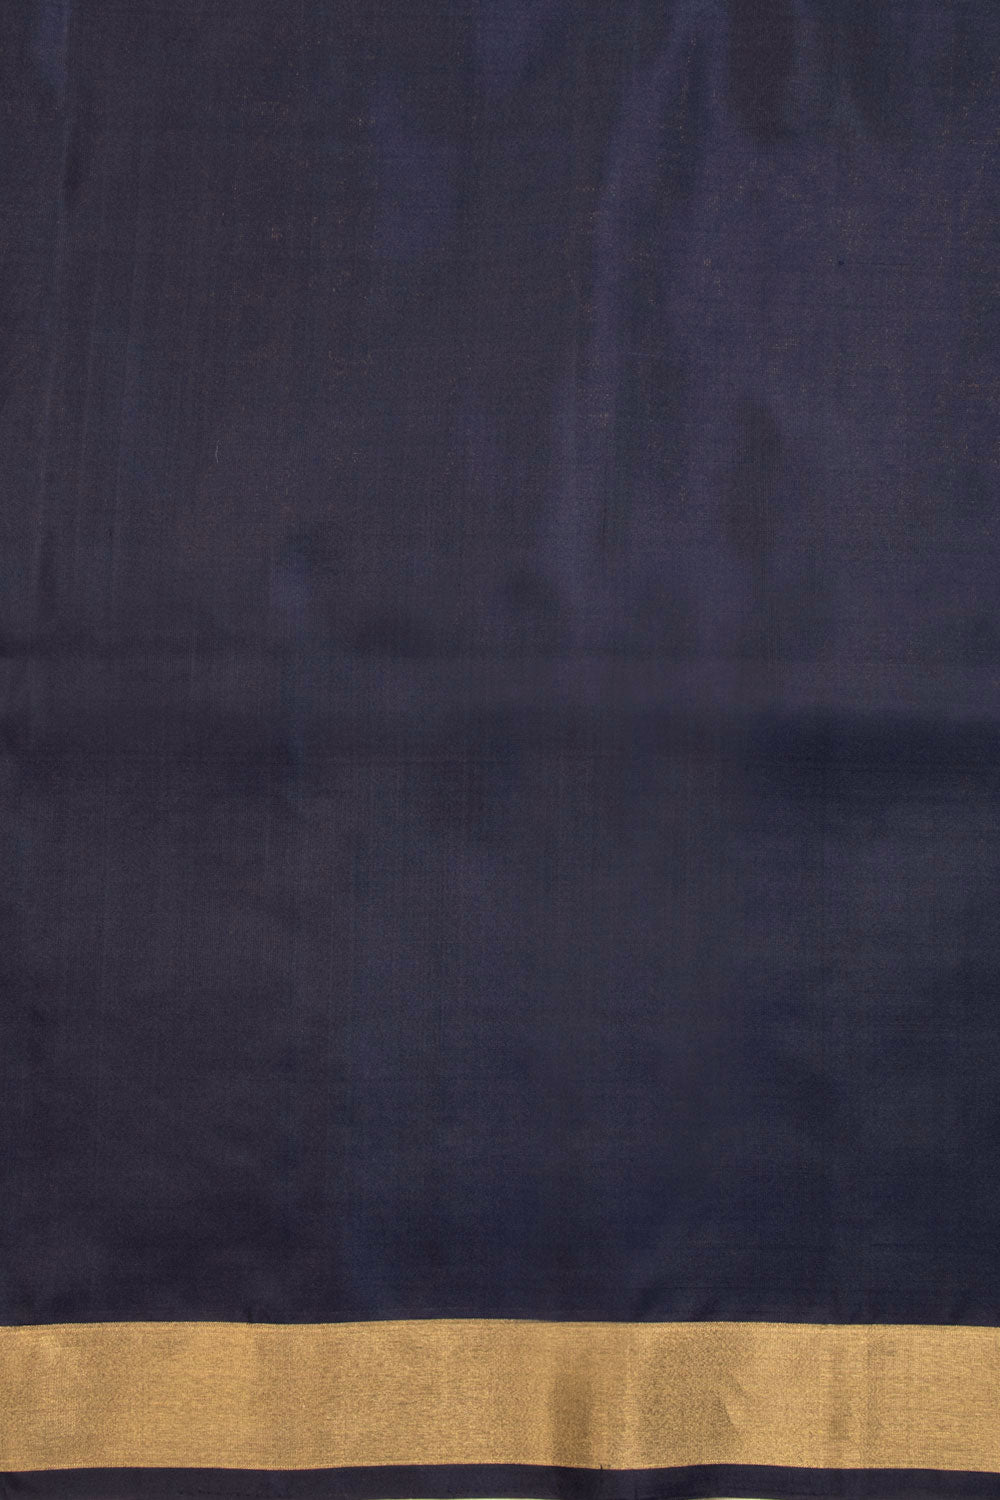 Dark Teal Blue Kanjivaram Soft Silk Saree 10069226 - Avishya